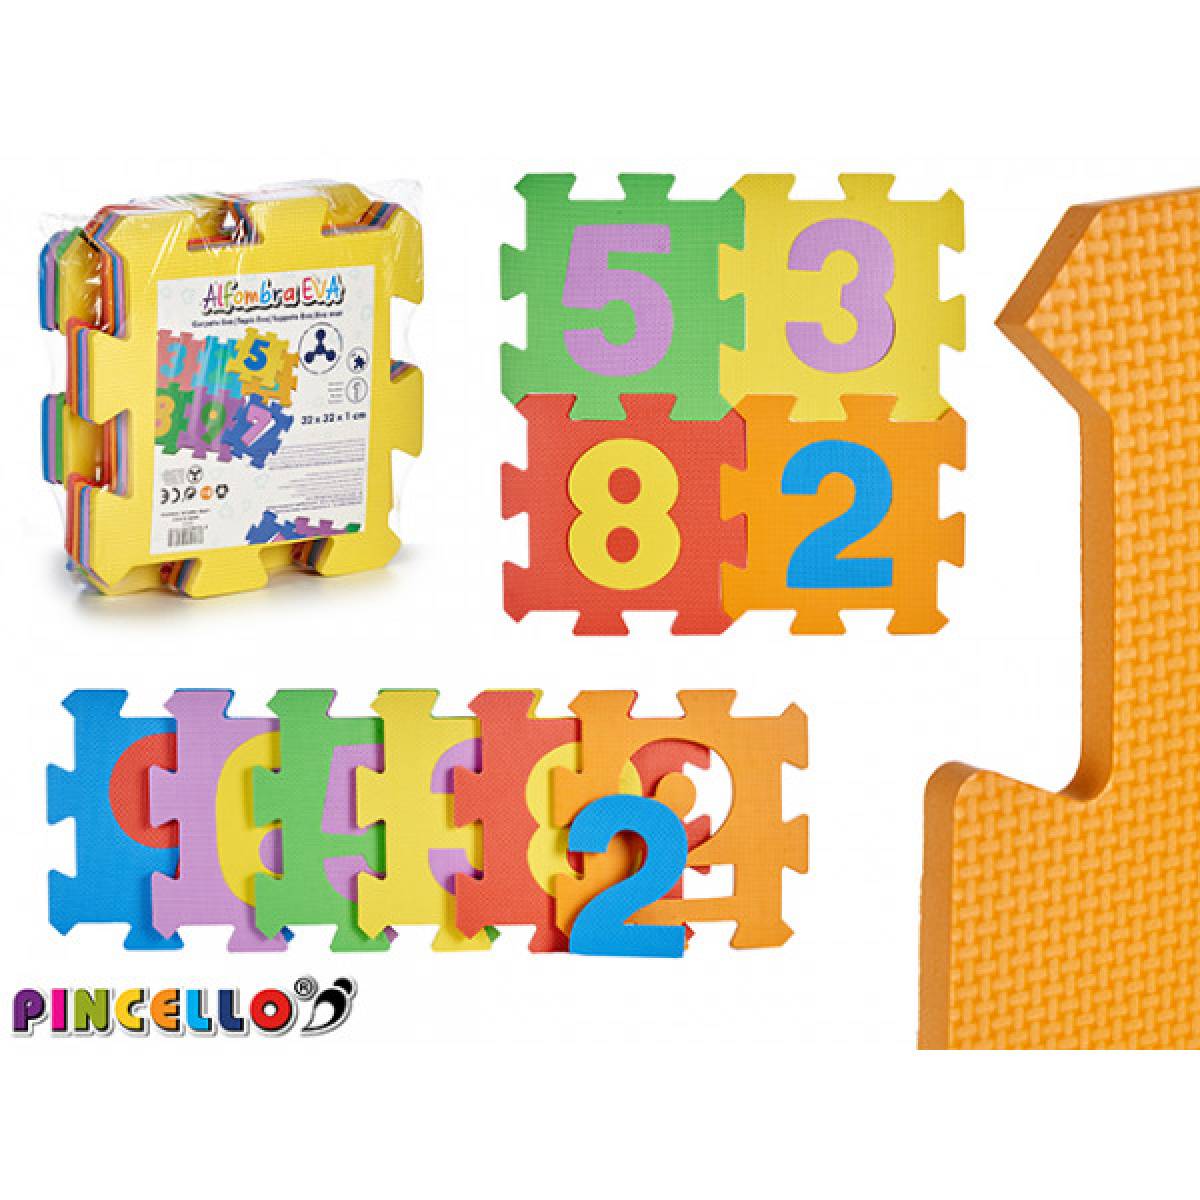 Covor puzzle 9 numere copii, joc educativ invata numerele